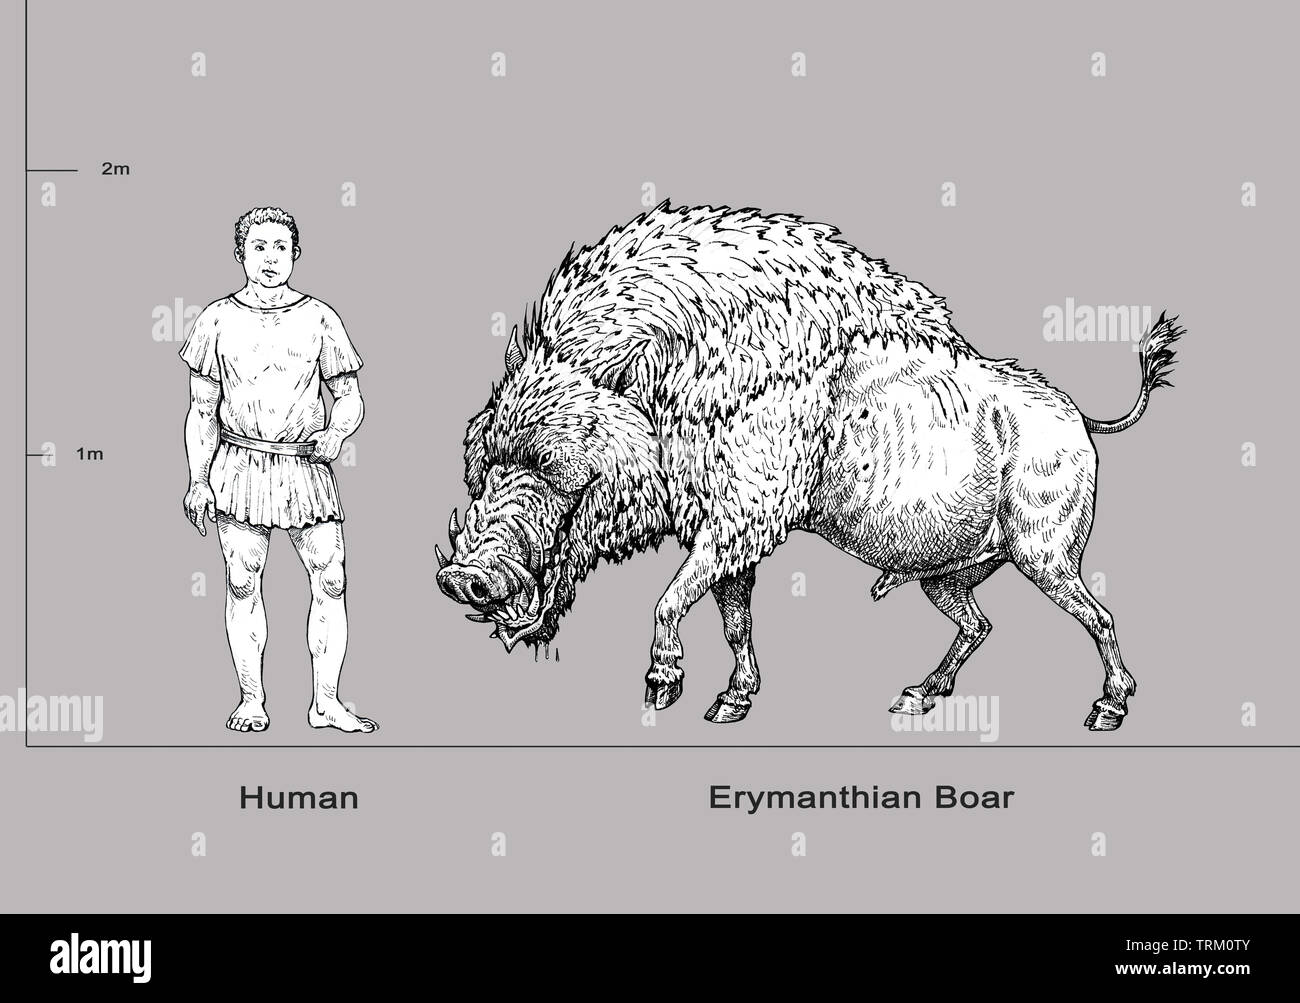 Monster Abbildung. Erymanthian Eber und die menschliche Anatomie Vergleich. Fantasy Zeichnung. Stockfoto